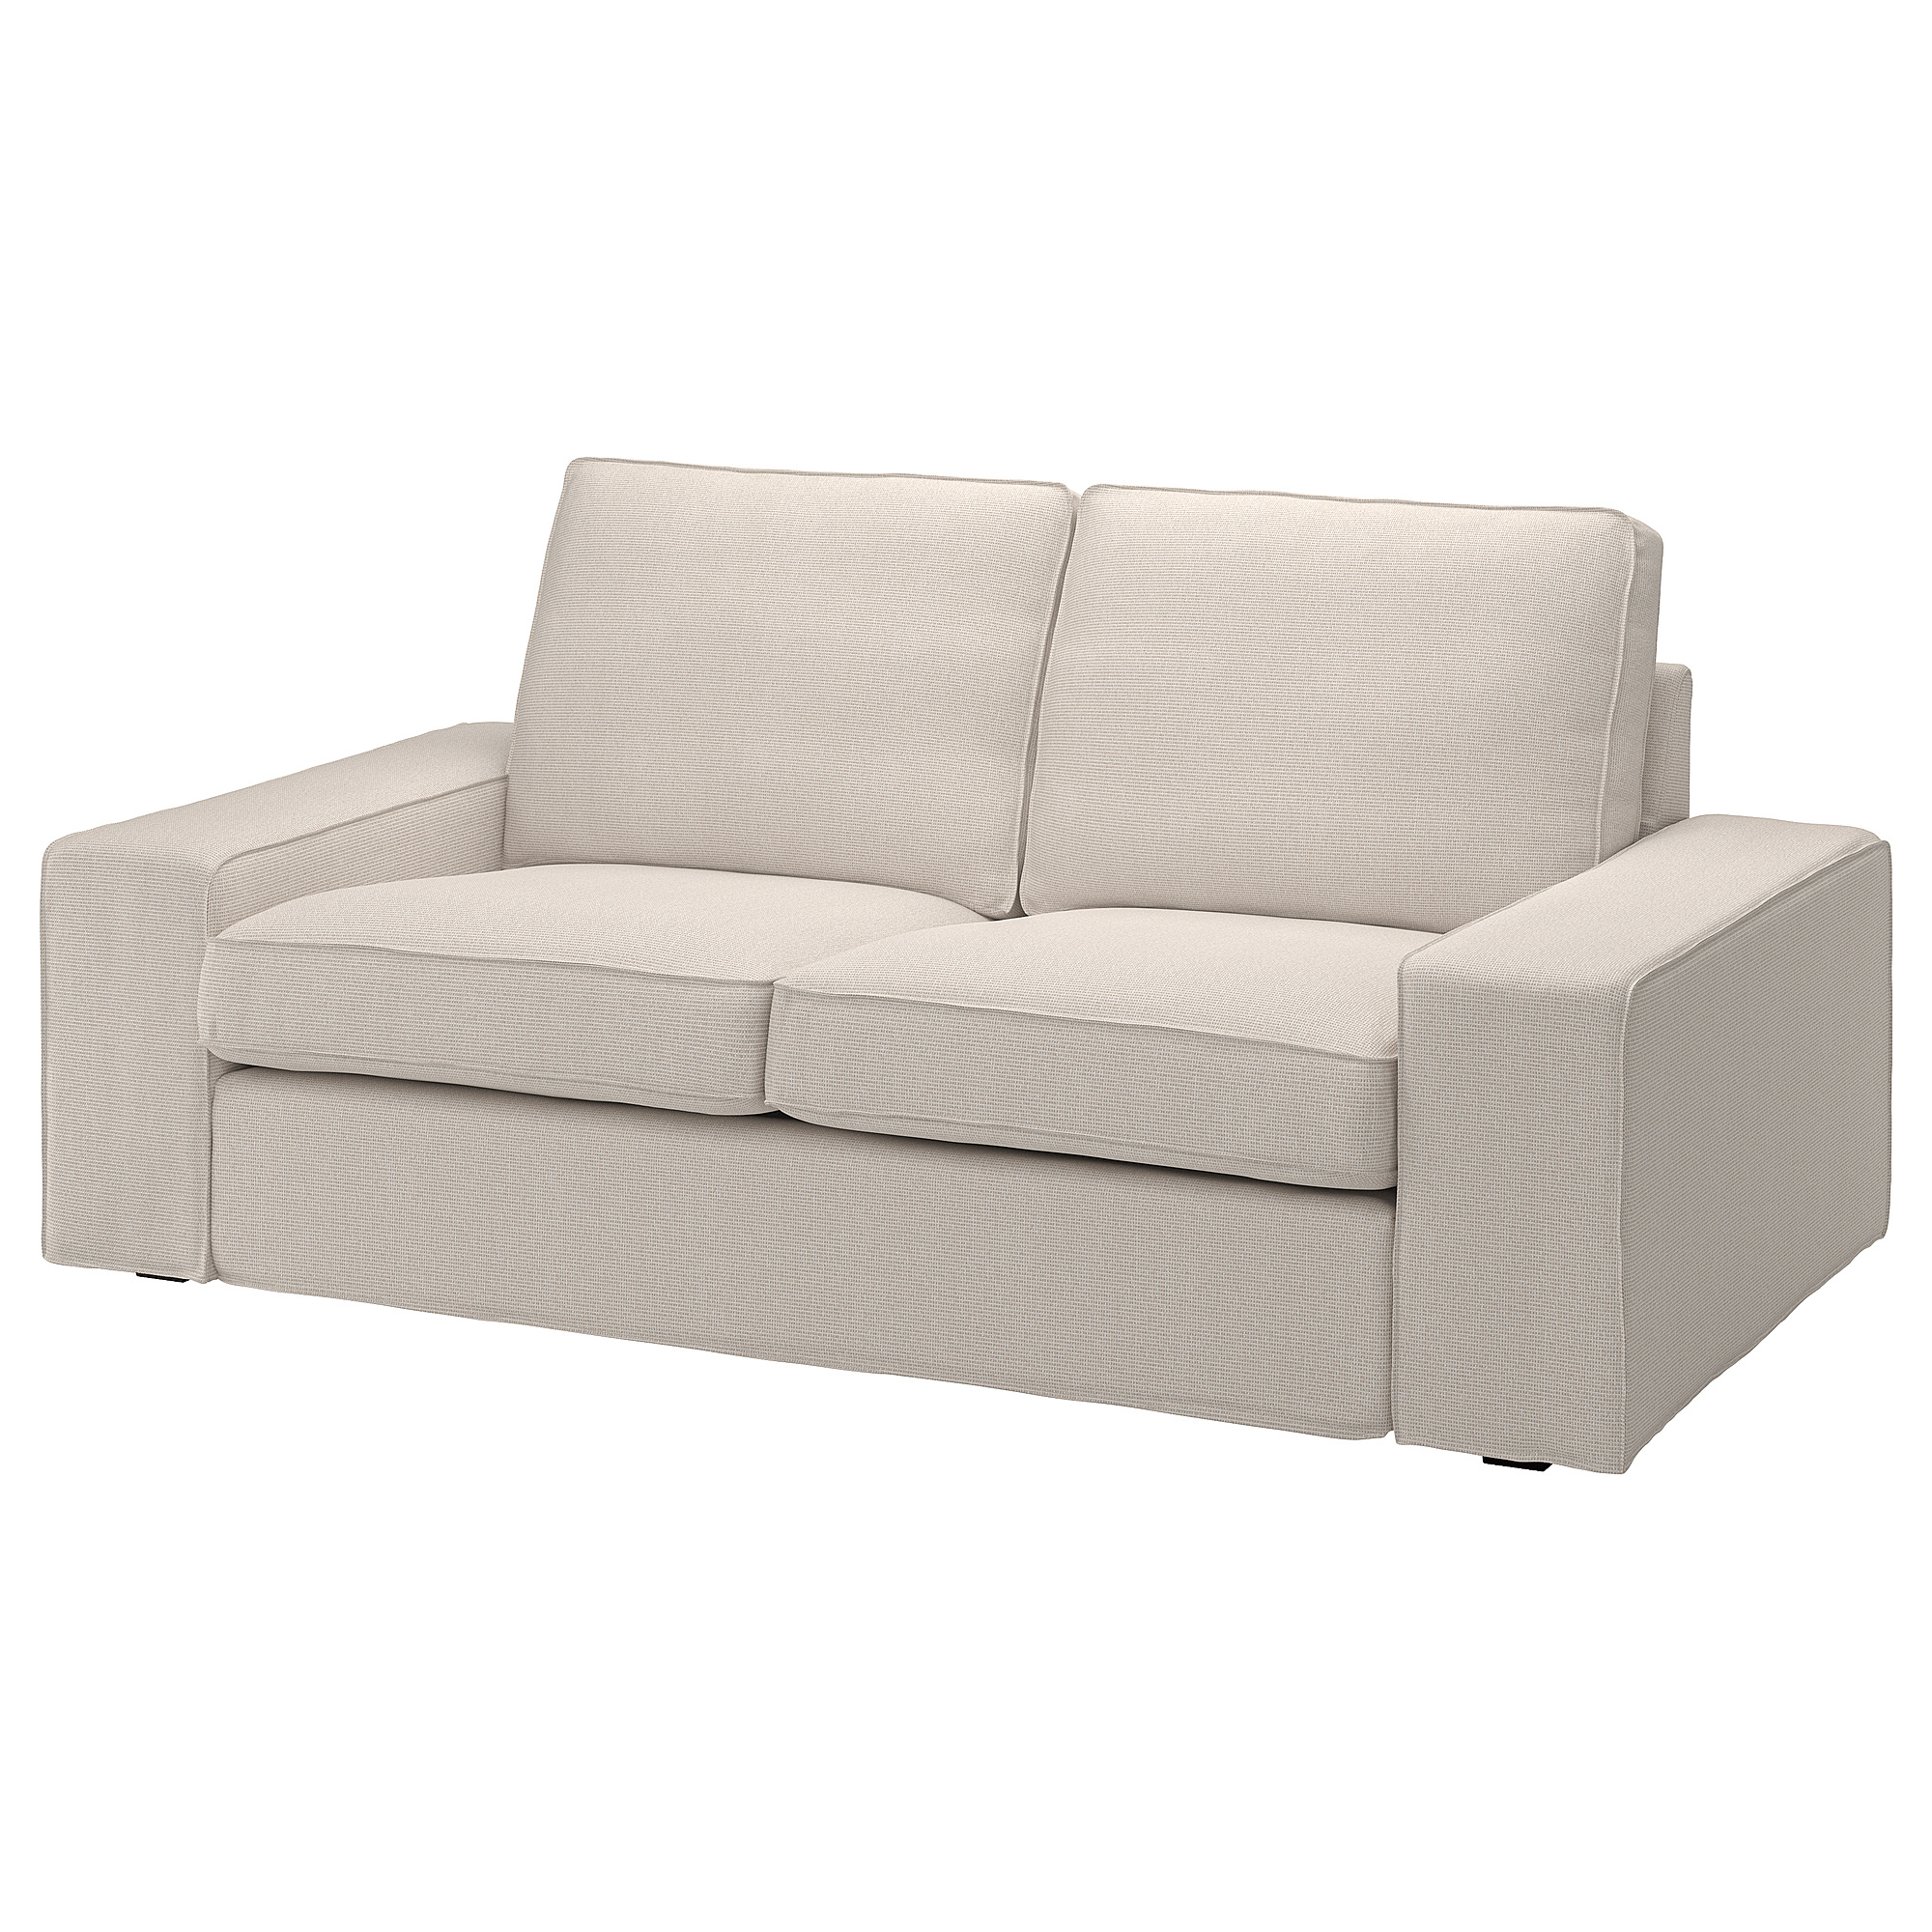 KIVIK 2-seat sofa